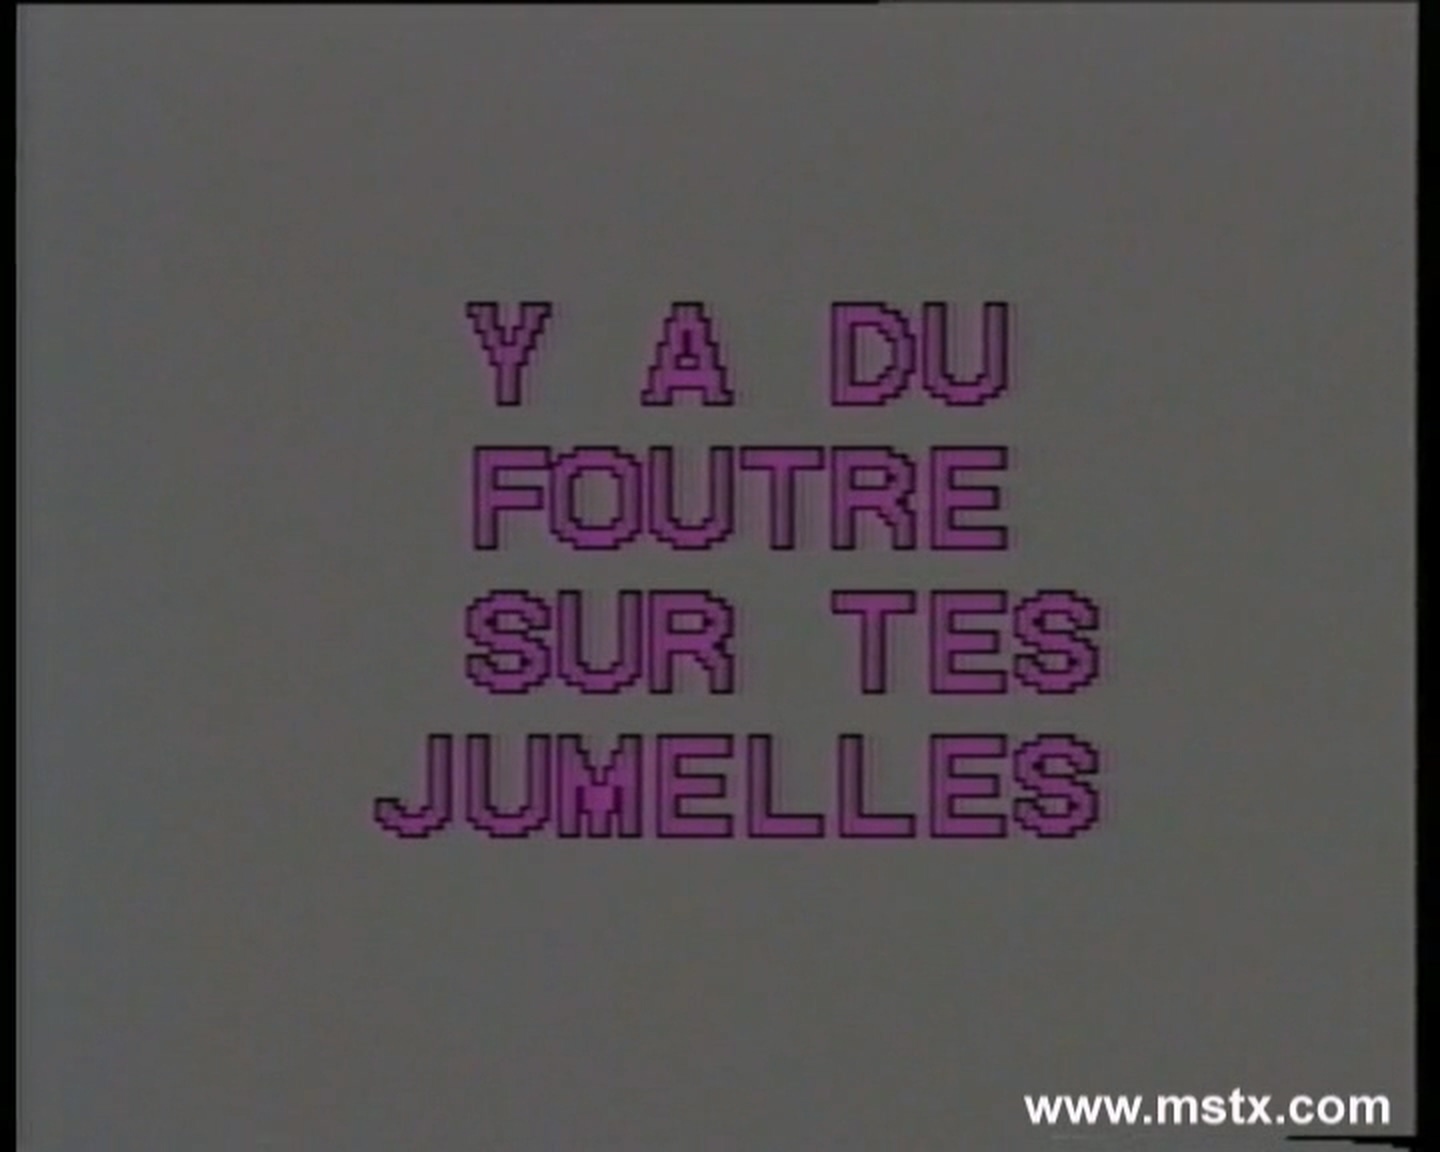 Coralie & Flora (сцена из "Y a du foutre - 290.2 MB